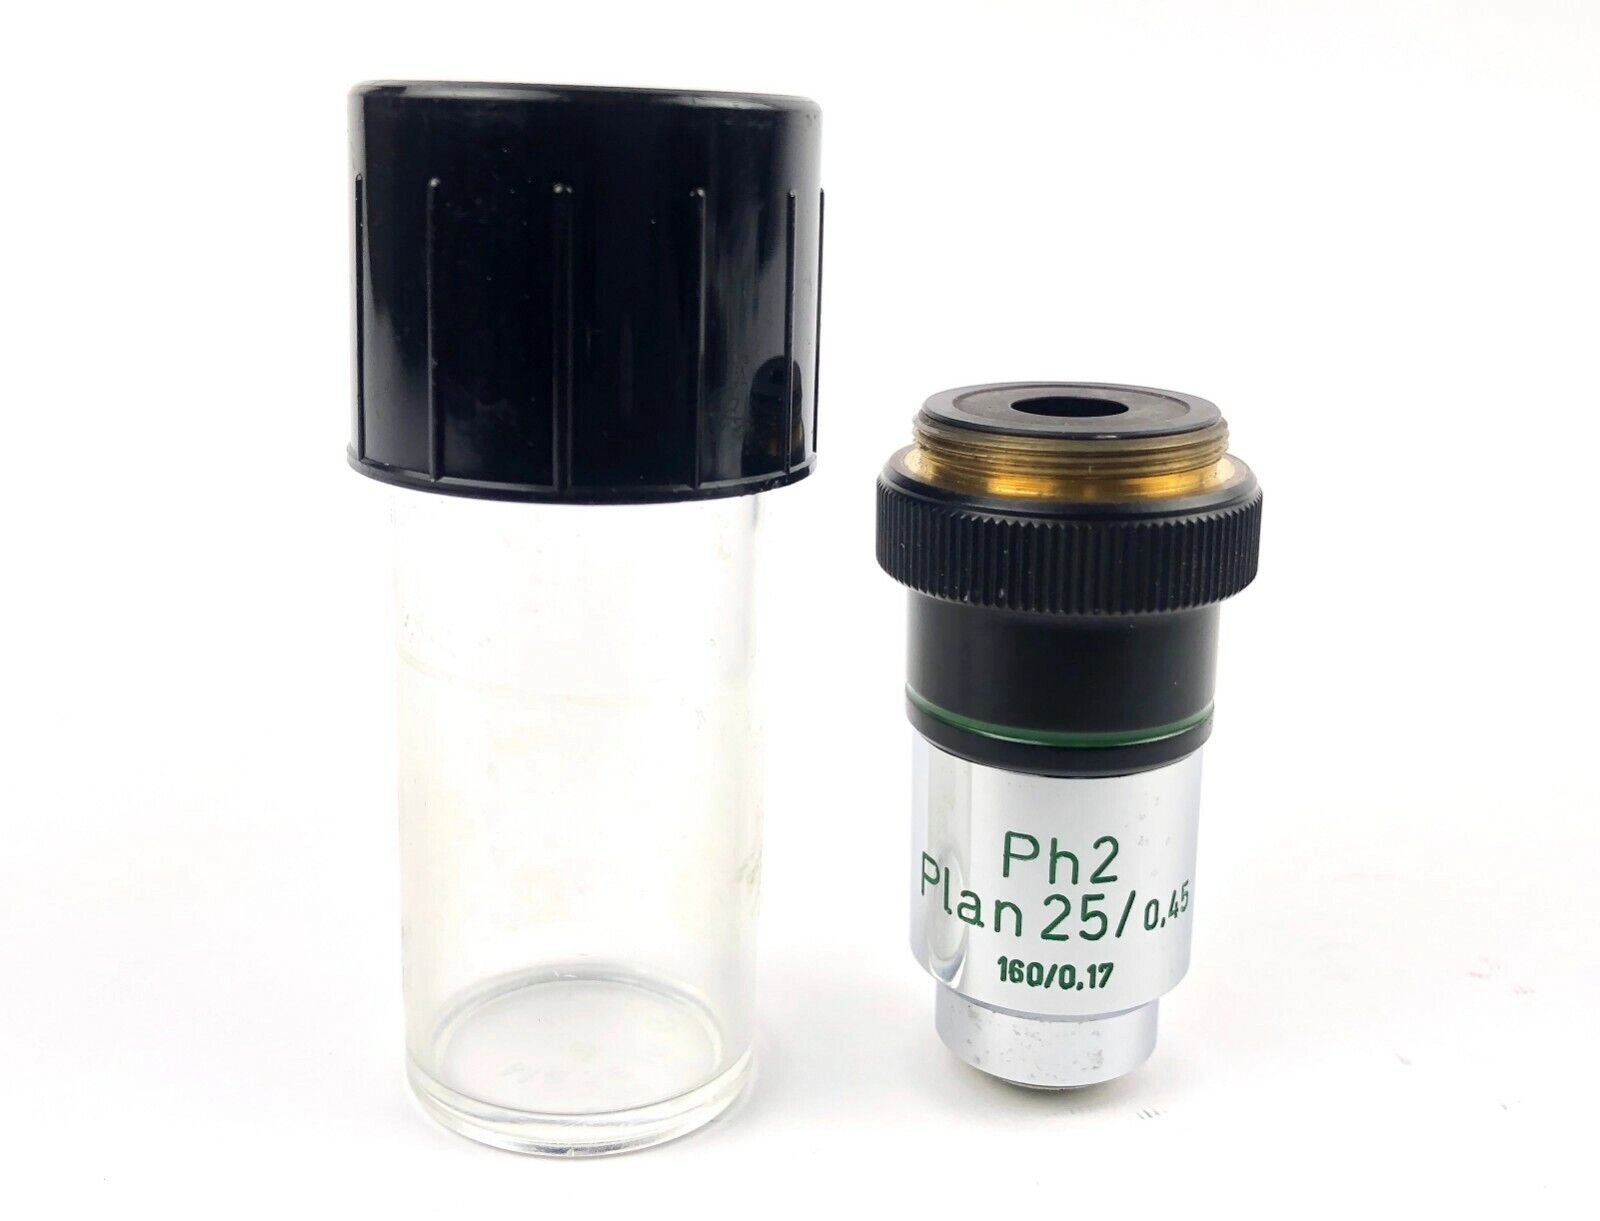 Carl Zeiss Microscopio Objective Ph2 Piano 25x, 0.